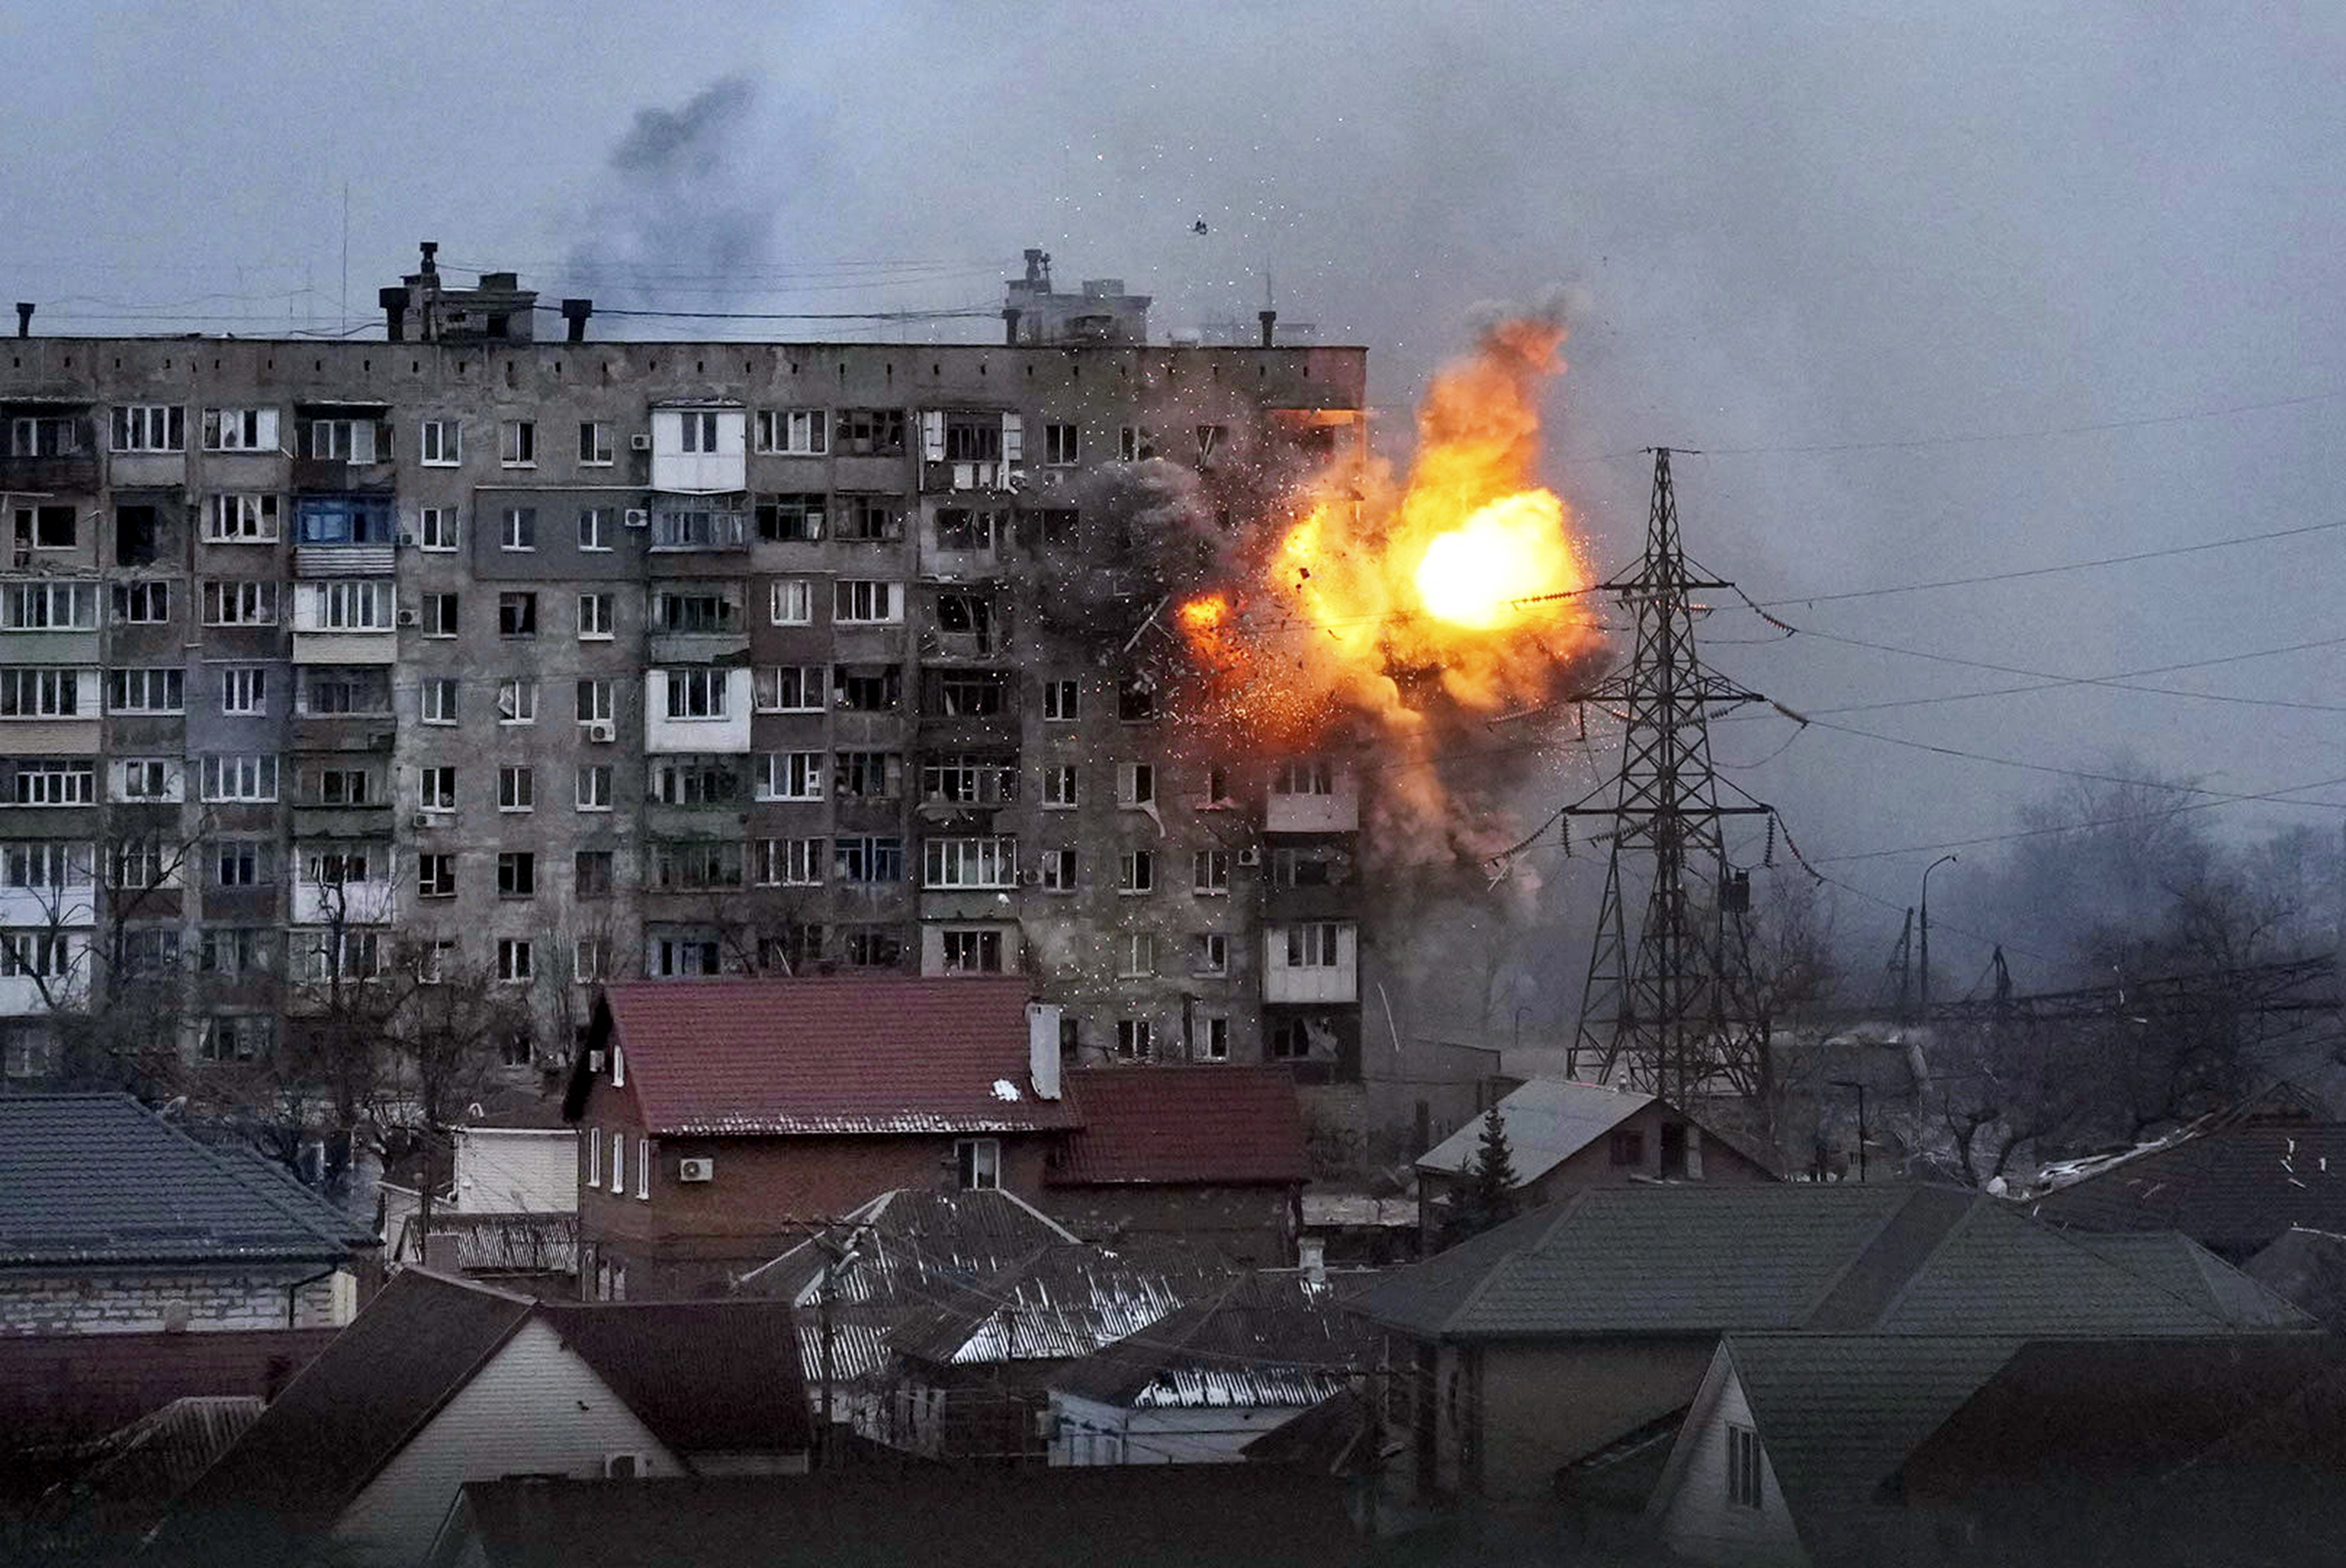 Una explosin se ve en un edificio de apartamentos despus de los incendios de tanques del ejrcito ruso en Mariupol, Ucrania, el viernes 11 de marzo de 2022